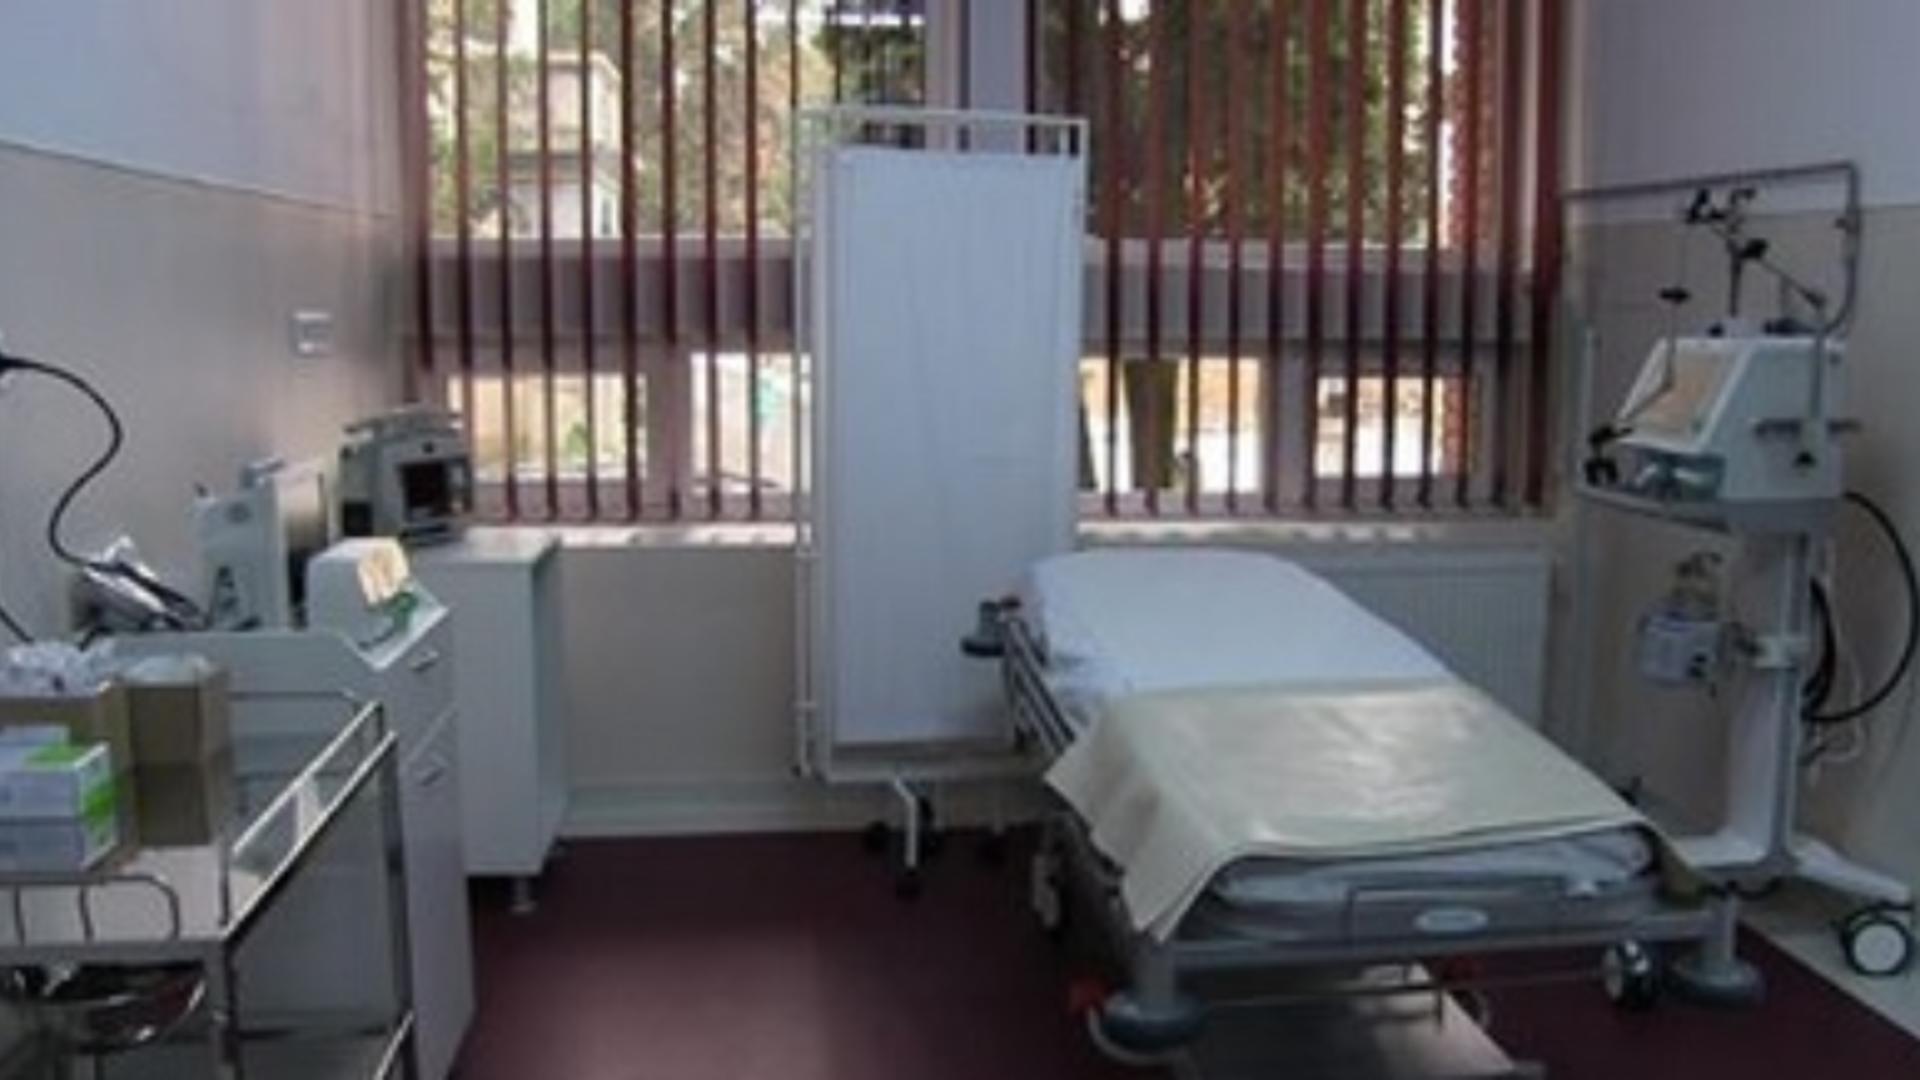 Spital din România, acuzat că a externat o bătrână prea devreme după operaţie